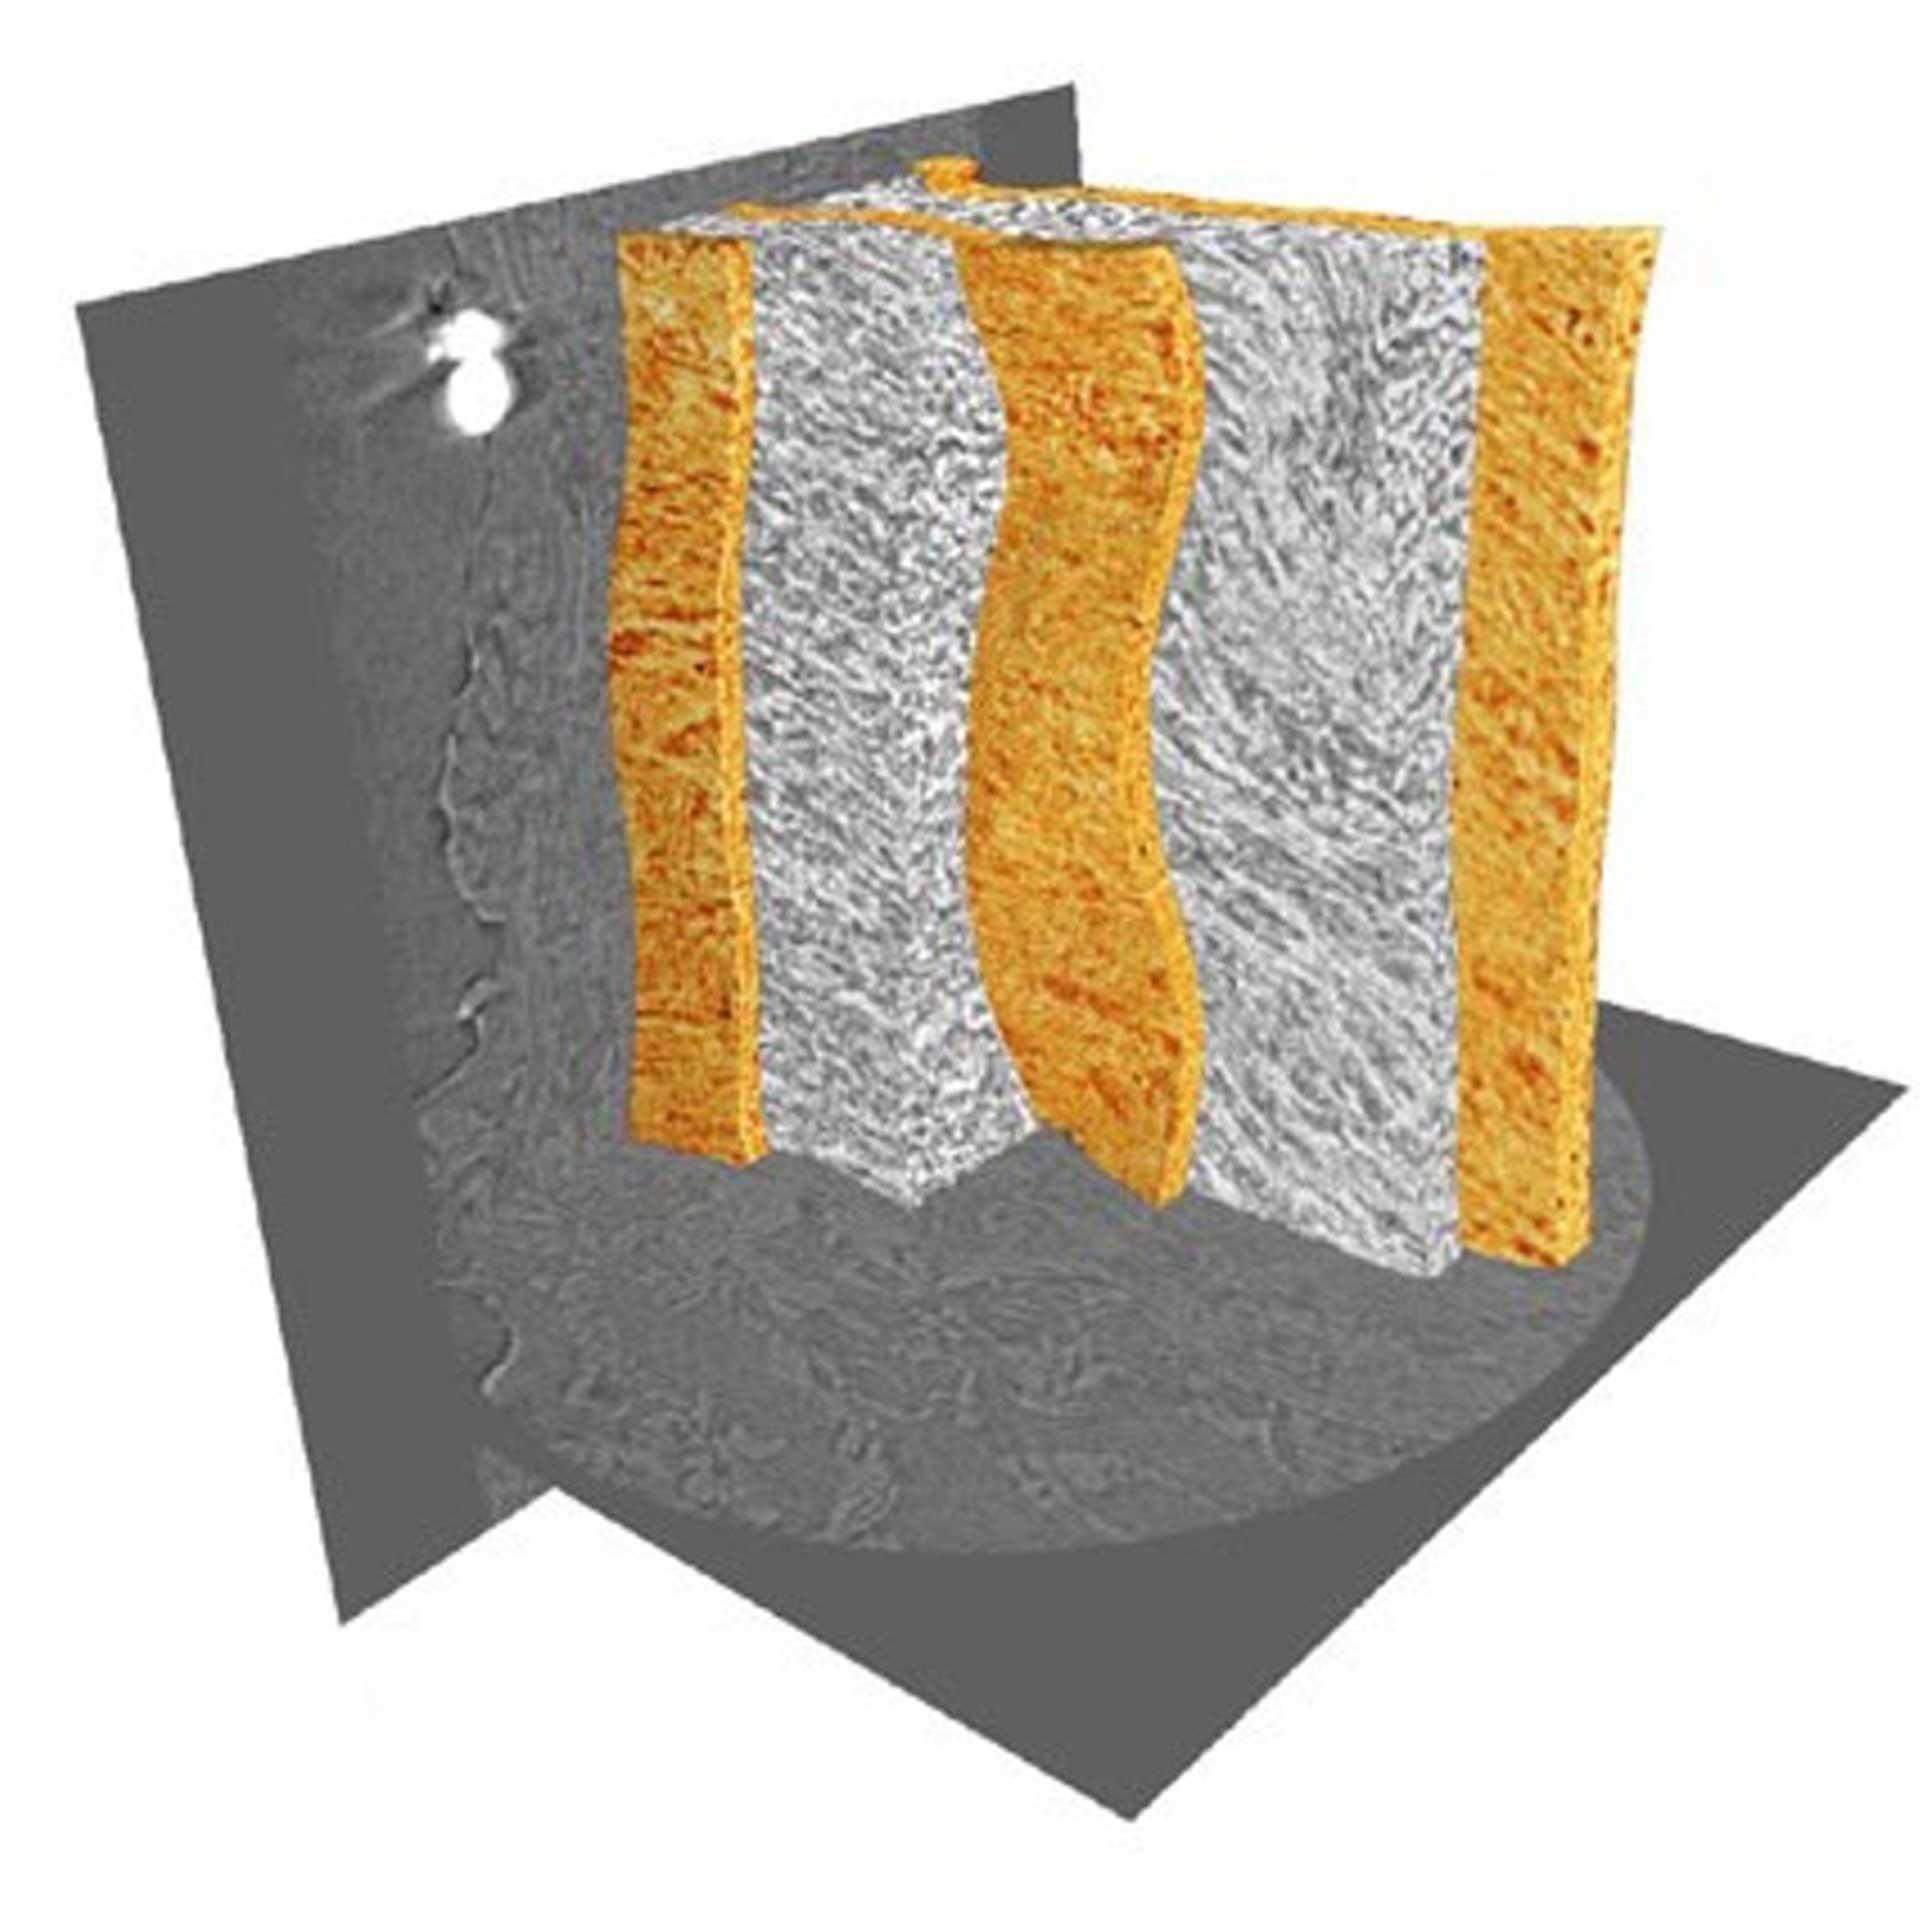 非染色血管壁組織で可視化した弾性ラメラ（オレンジ色）およびラメラ間領域。Xradia 800 Ultraでイメージング。画像ご提供：The University of Manchester, UK（試料幅：90 µm）